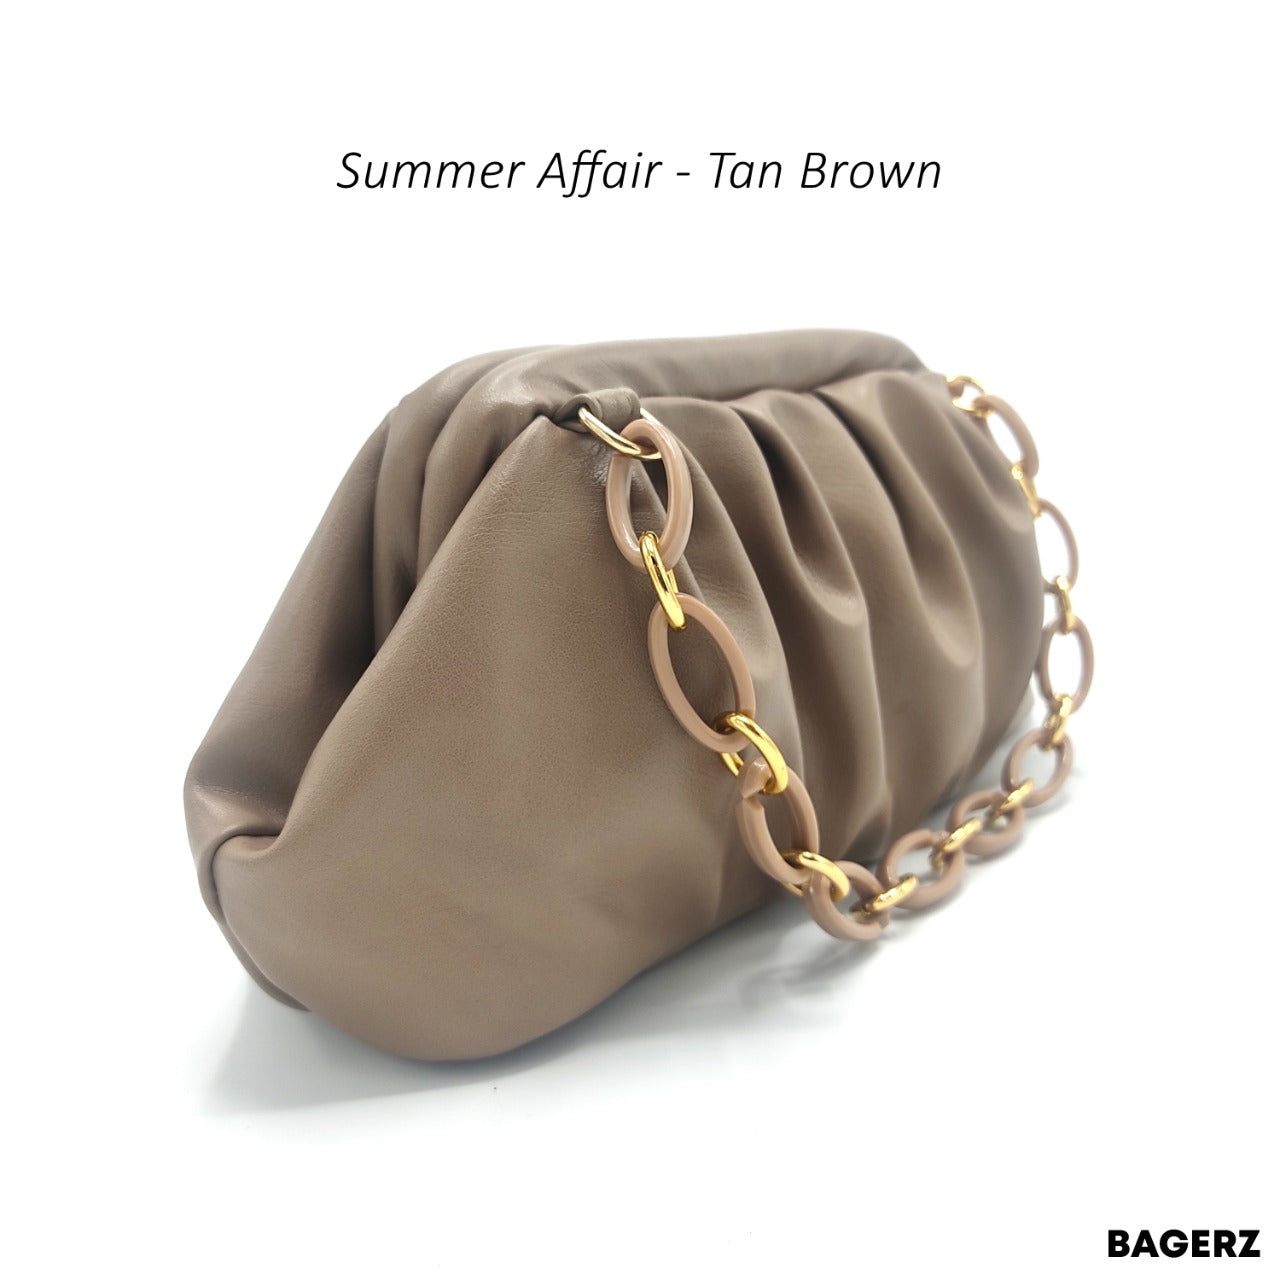 Summer Affair - Tan Brown